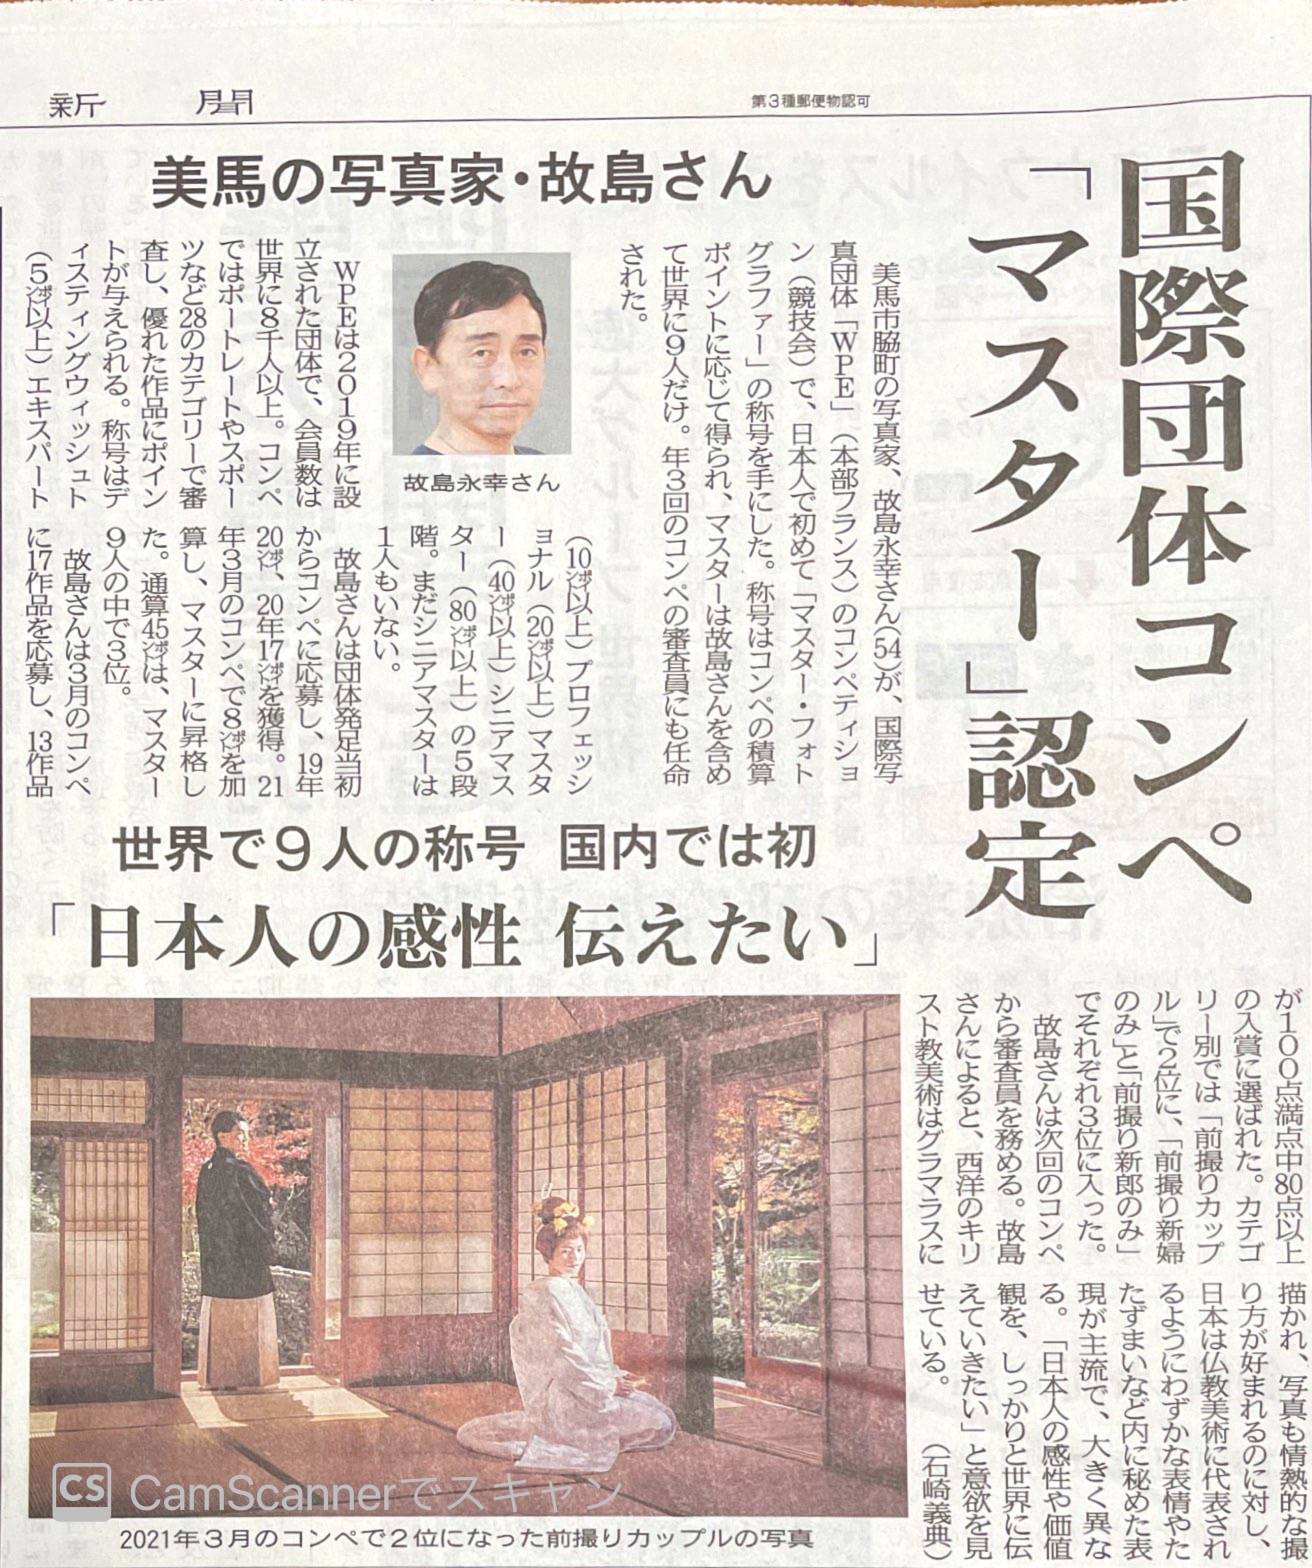 5/12　徳島新聞朝刊に掲載されました